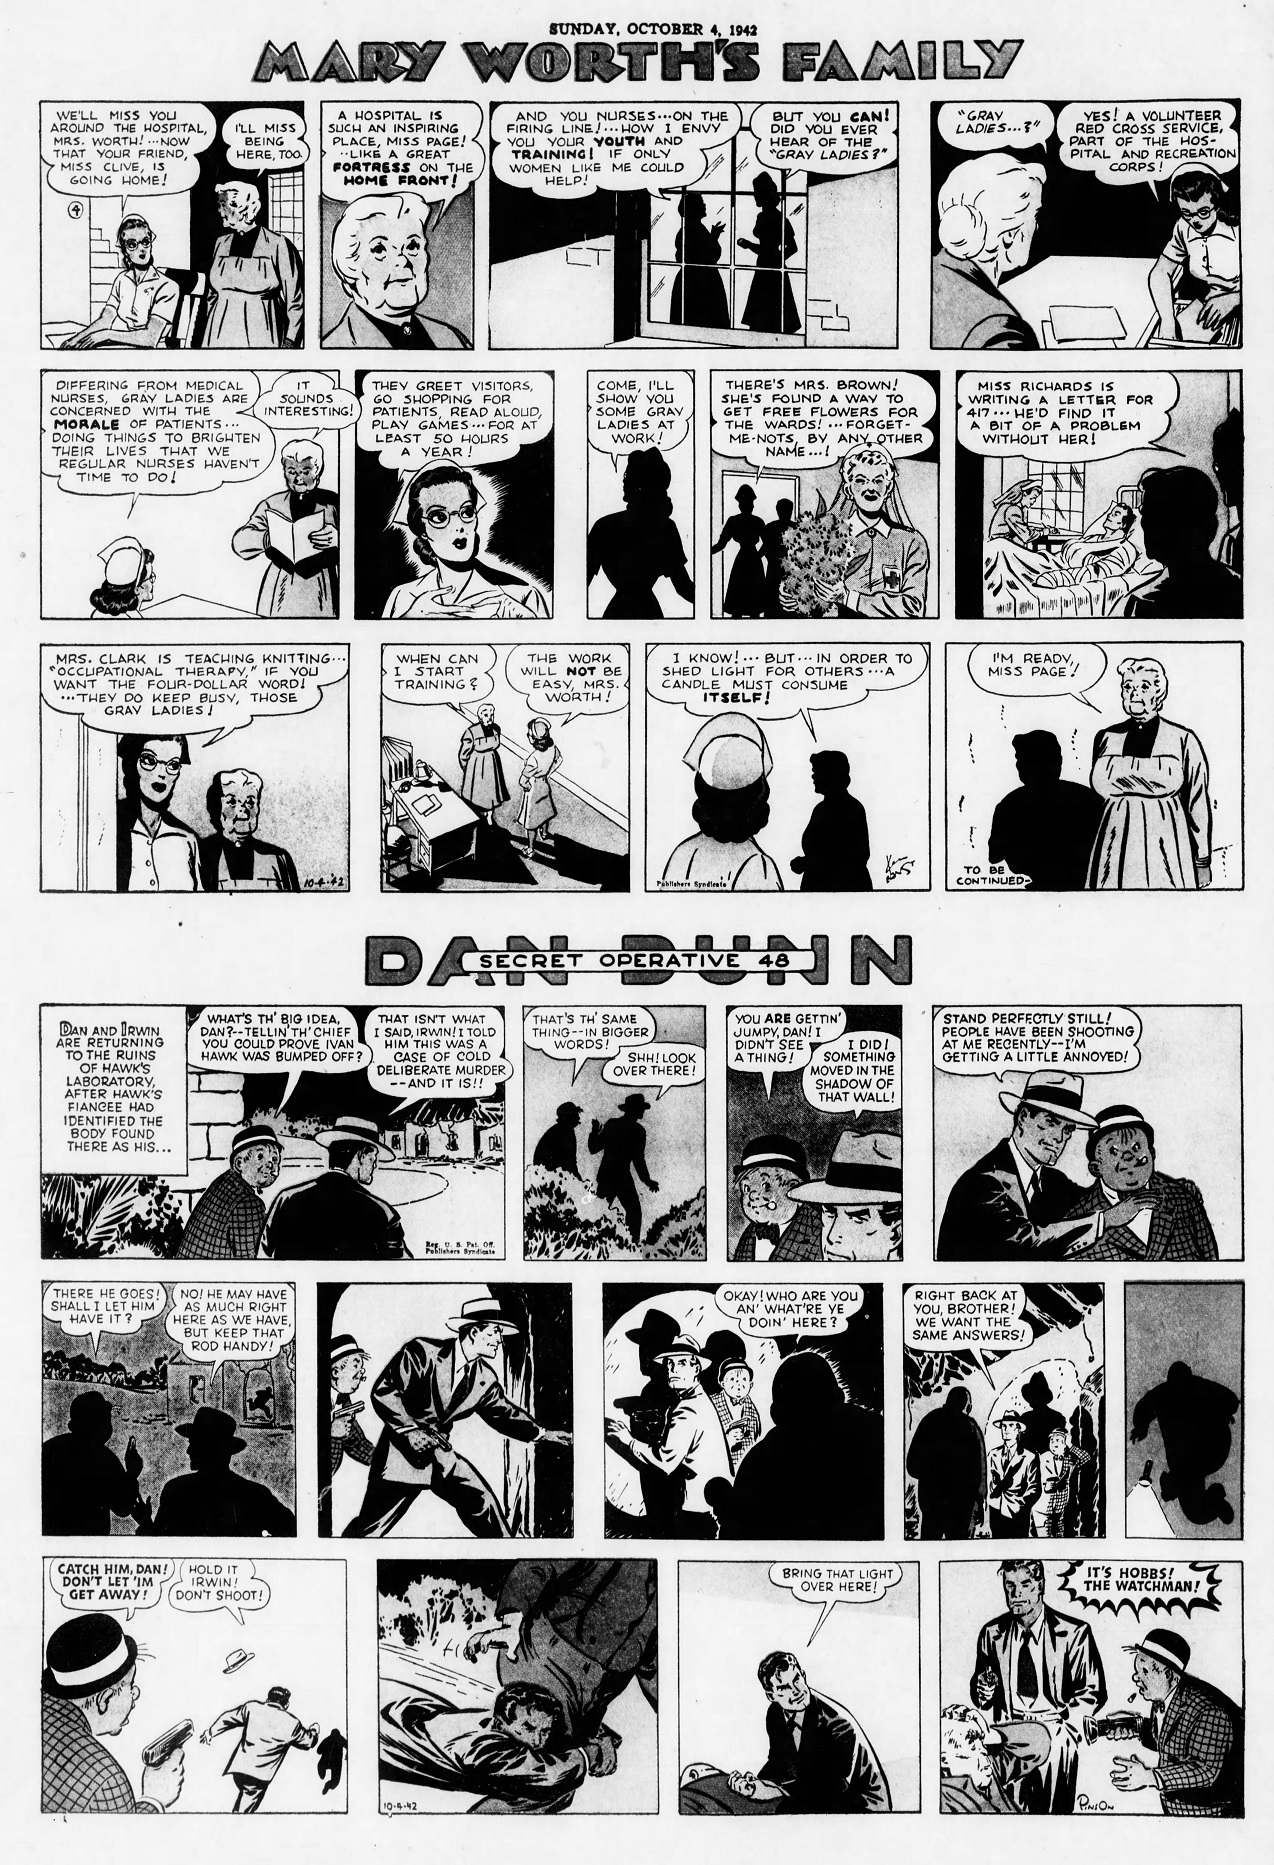 The_Brooklyn_Daily_Eagle_Sun__Oct_4__1942_(8).jpg